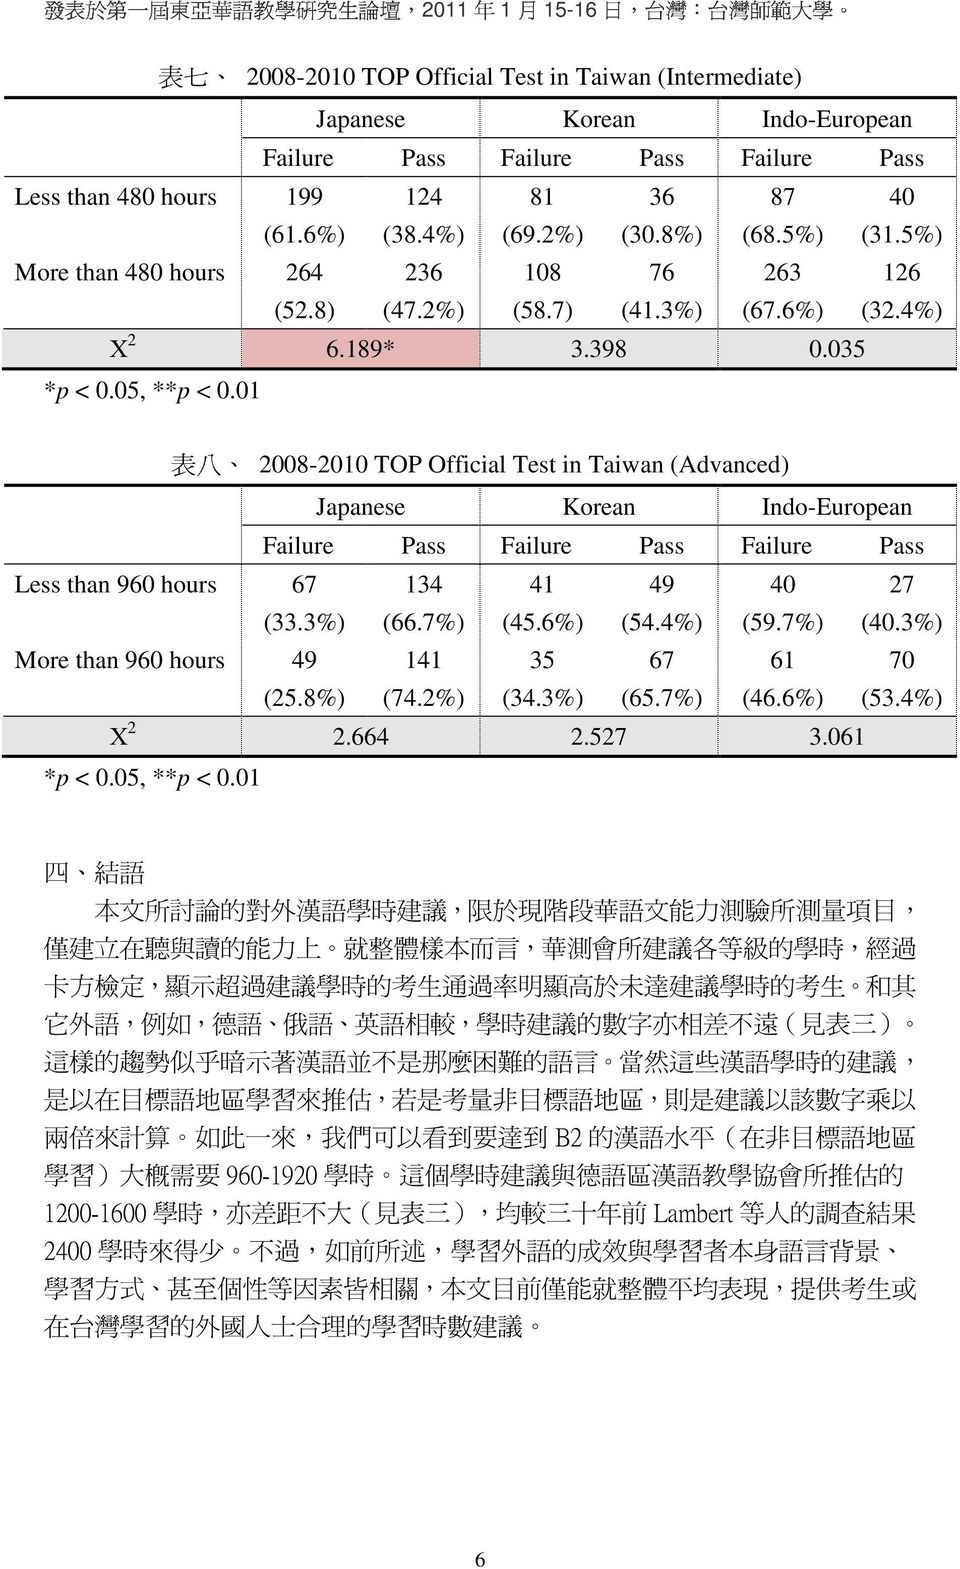 0 表 八 2008-200 TOP Official Test in Taiwan (Advanced) Less than 960 hours 67 34 4 49 40 27 (33.3%) (66.7%) (45.6%) (54.4%) (59.7%) (40.3%) More than 960 hours 49 4 35 67 6 70 (25.8%) (74.2%) (34.